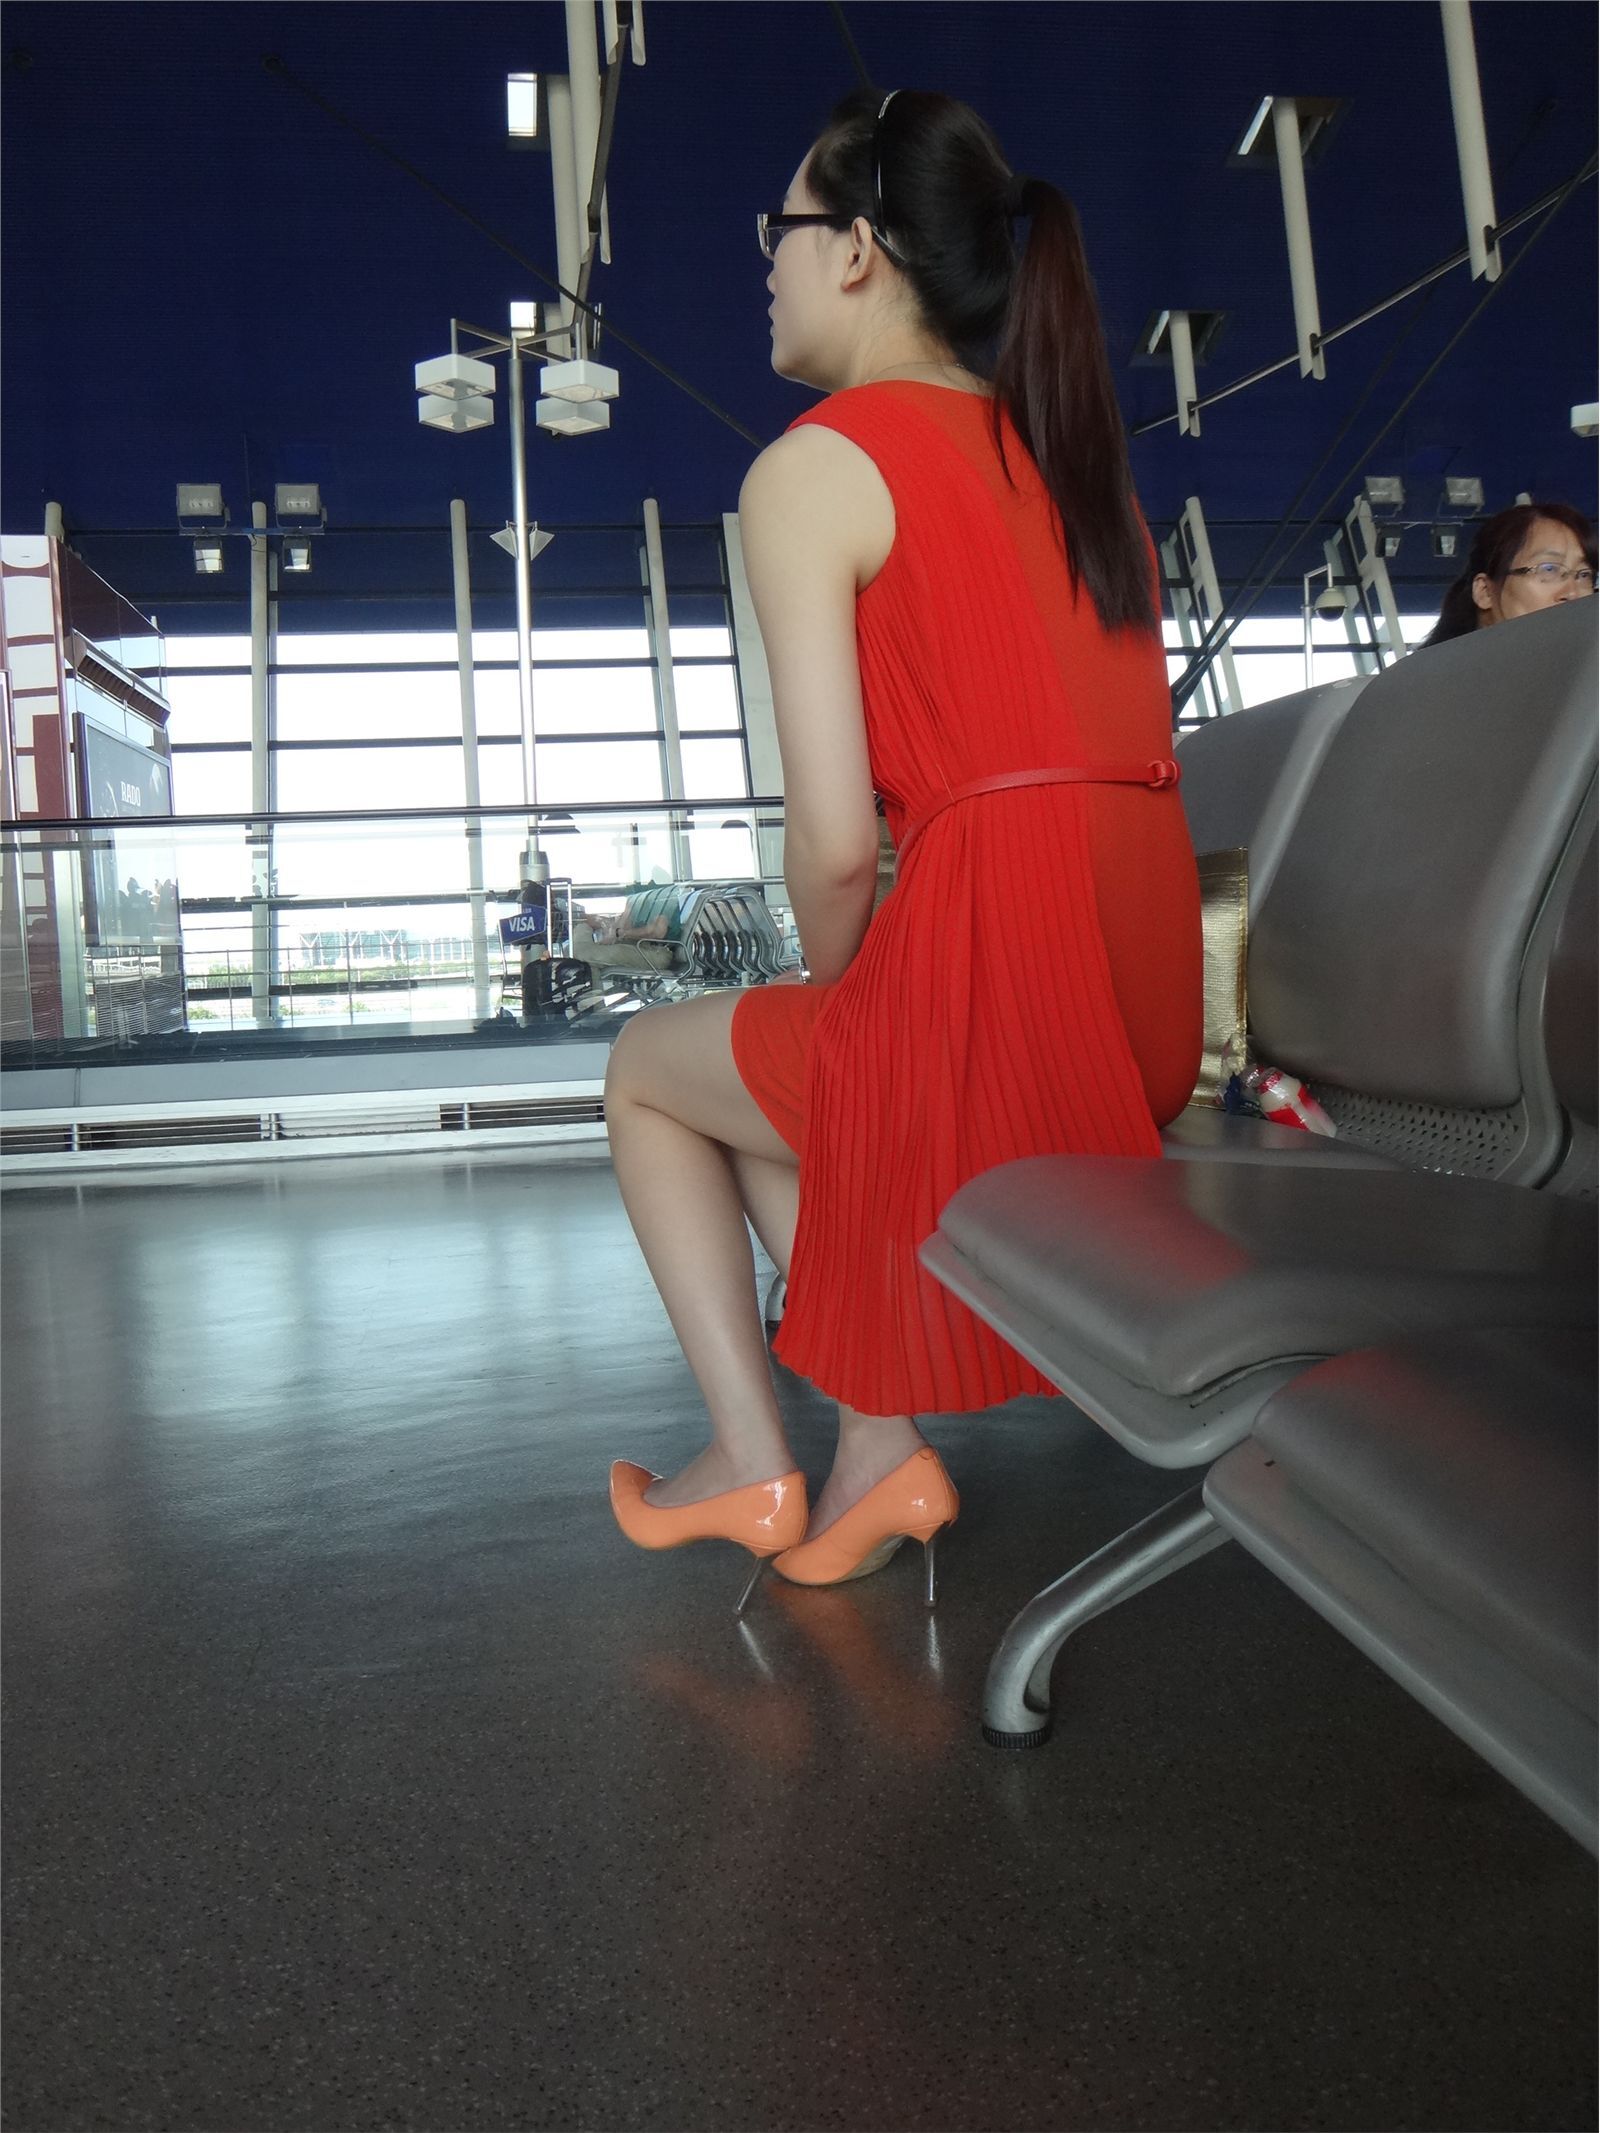 [户外街拍] 2013.12.23 浦东机场拍摄两个美女